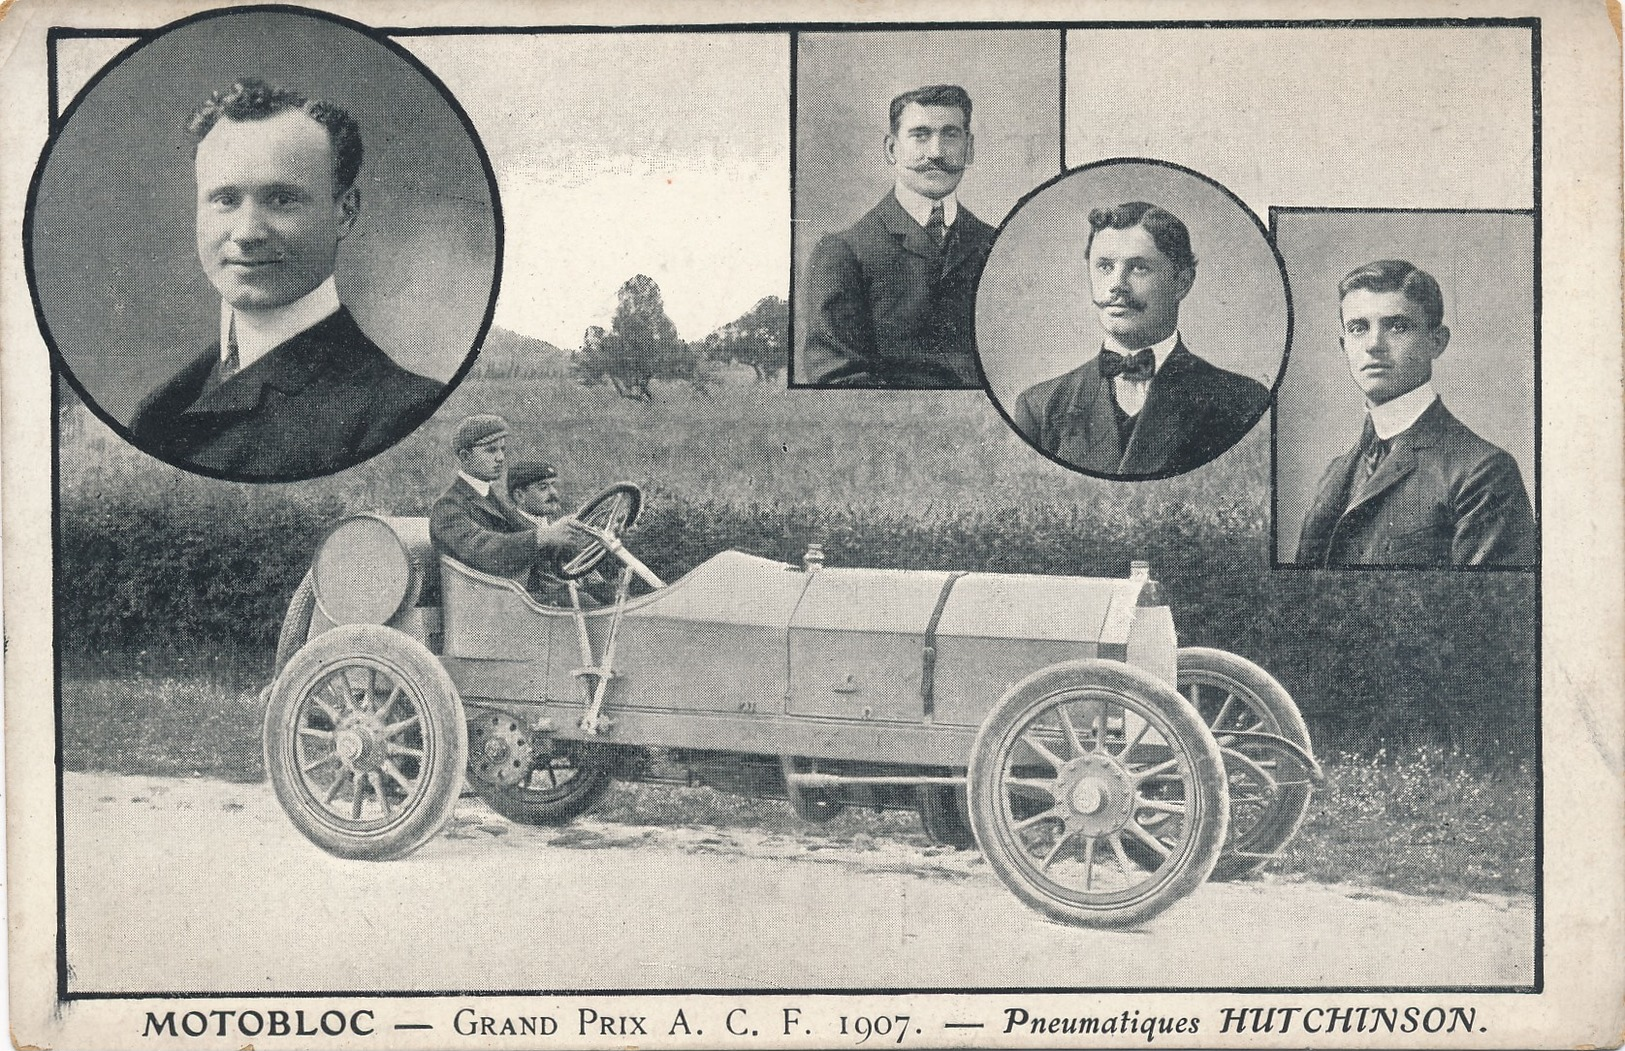 J15 - AUTOMOBILE - MOTOBLOC - Grand Prix ACF 1907 - Pneumatiques Hutchinson - Passenger Cars